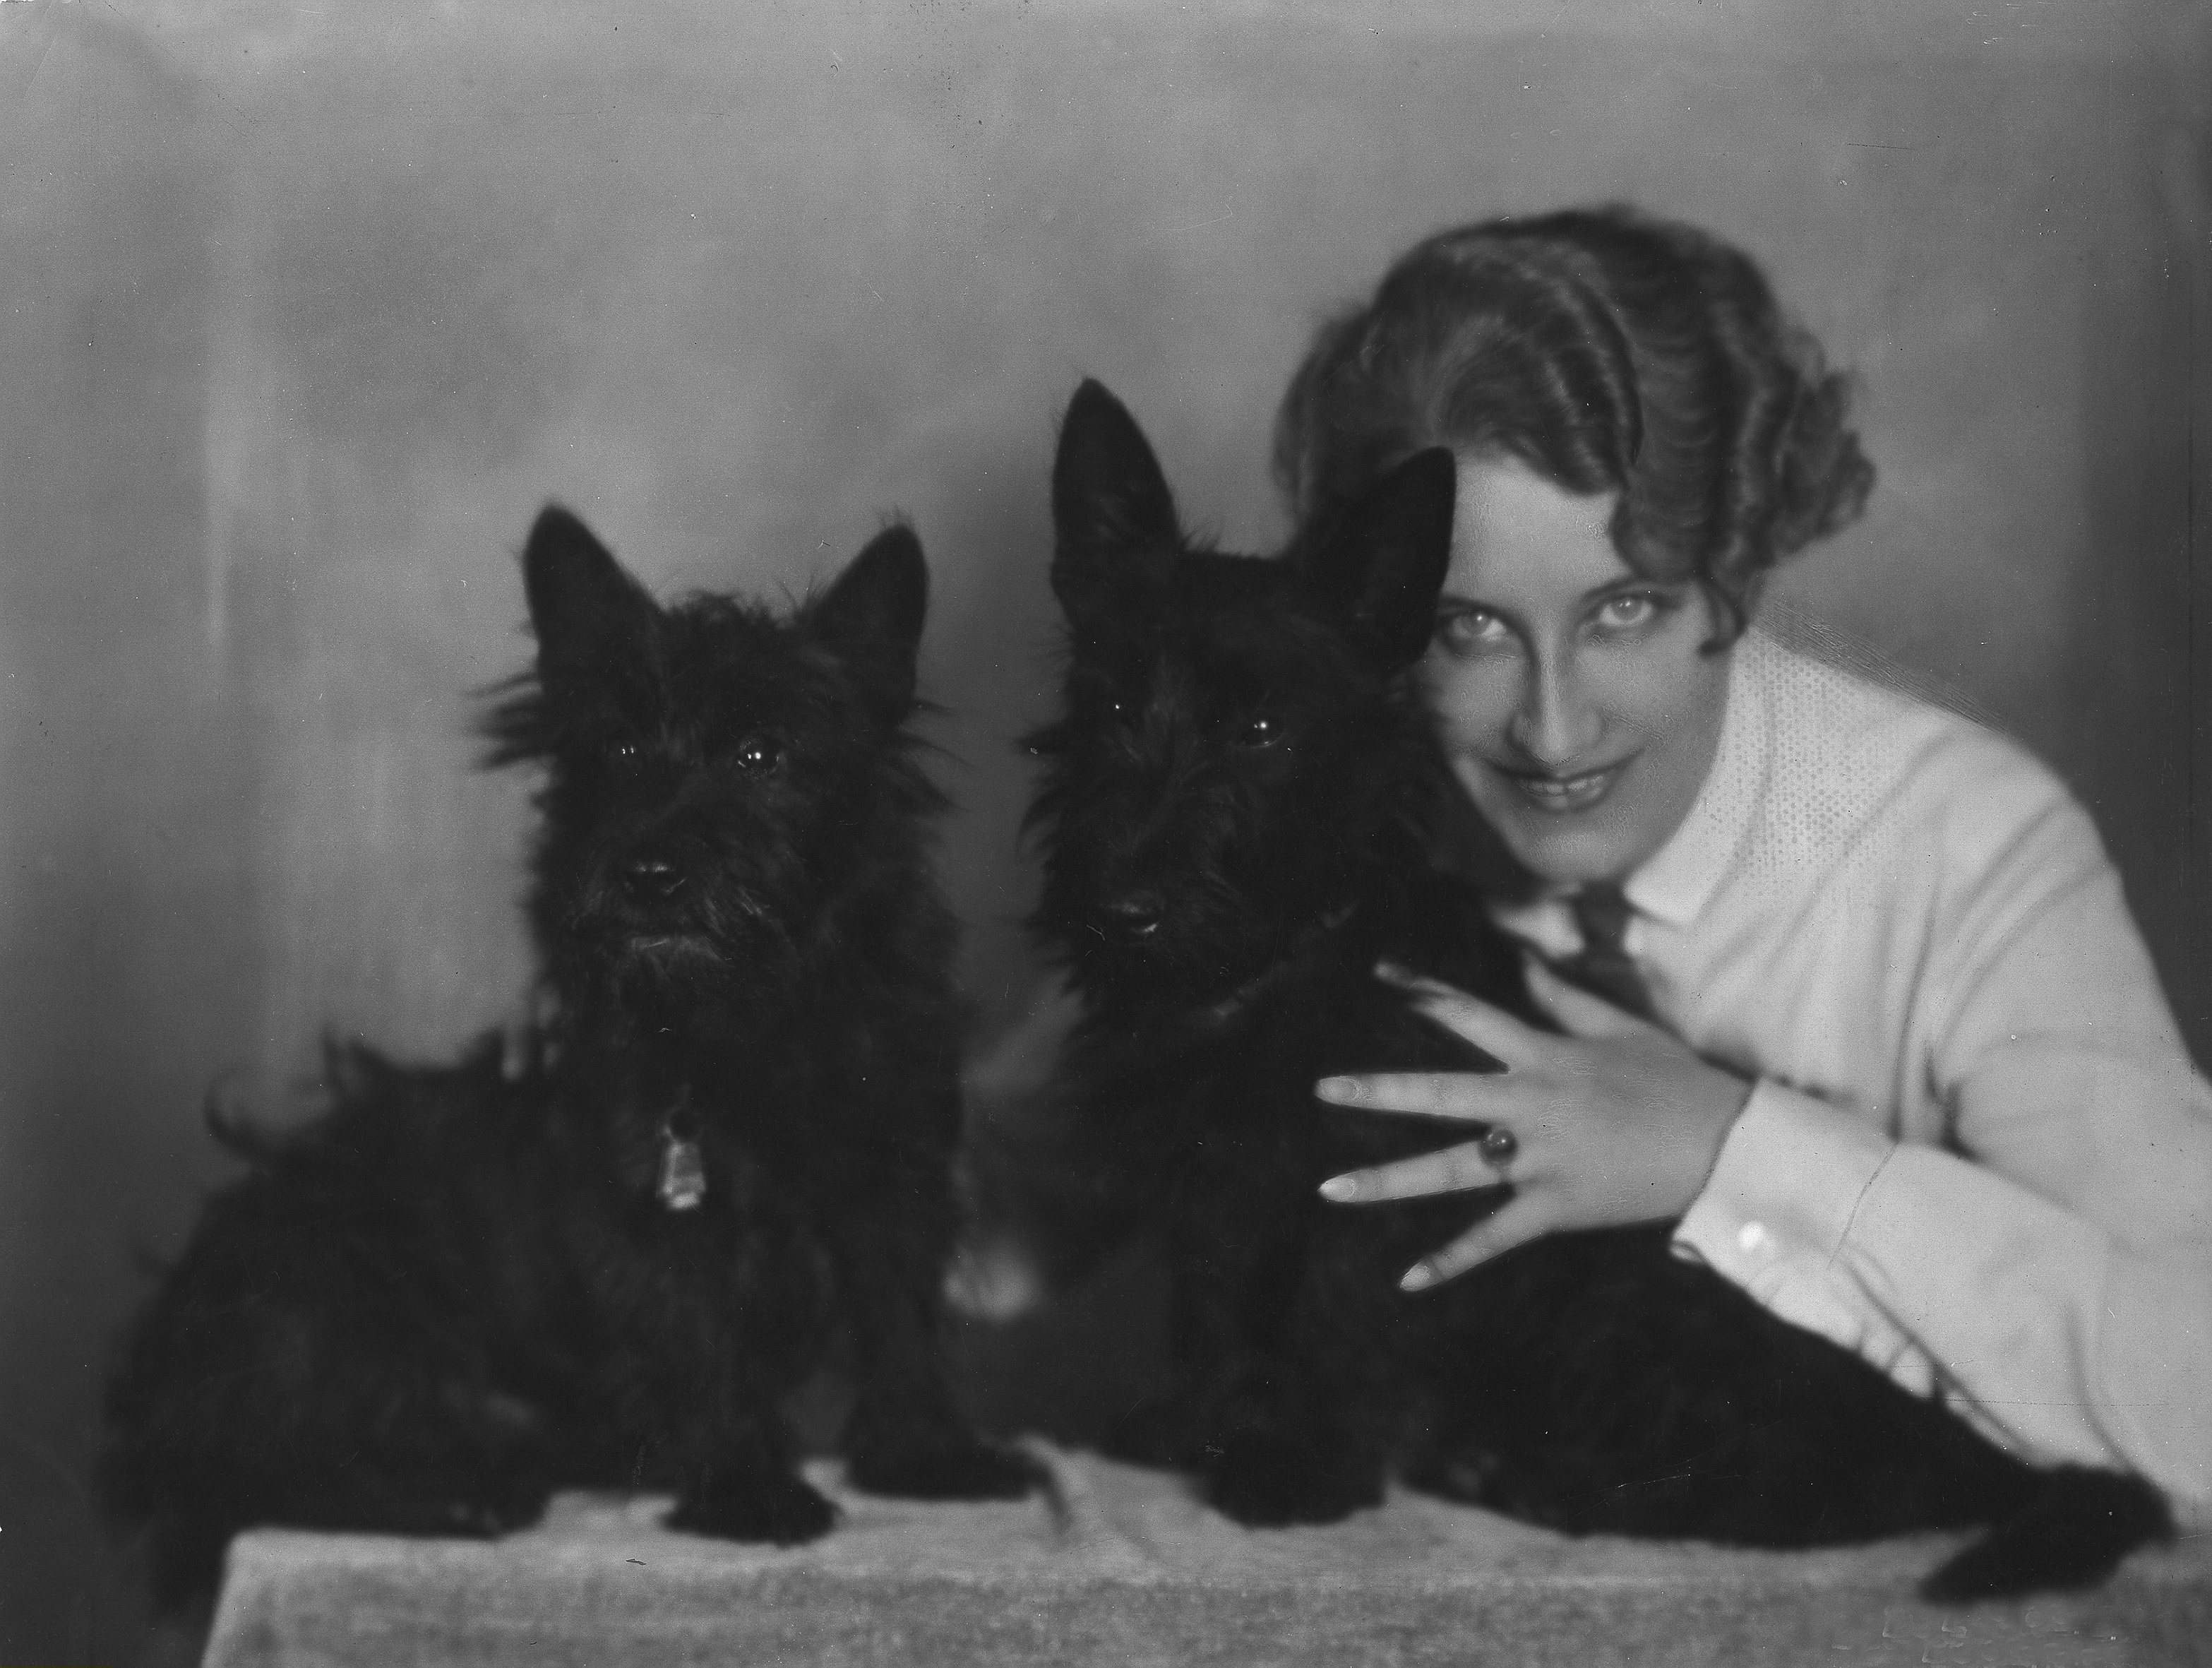 Thea von Harbou, scenarzystka filmowa i aktorka teatralna, była żoną reżysera Fritza Langa (do 1933 r.). Zdjęcie wykonano w studiu fotograficznym Becker & Maass w Berlinie w 1931 r.